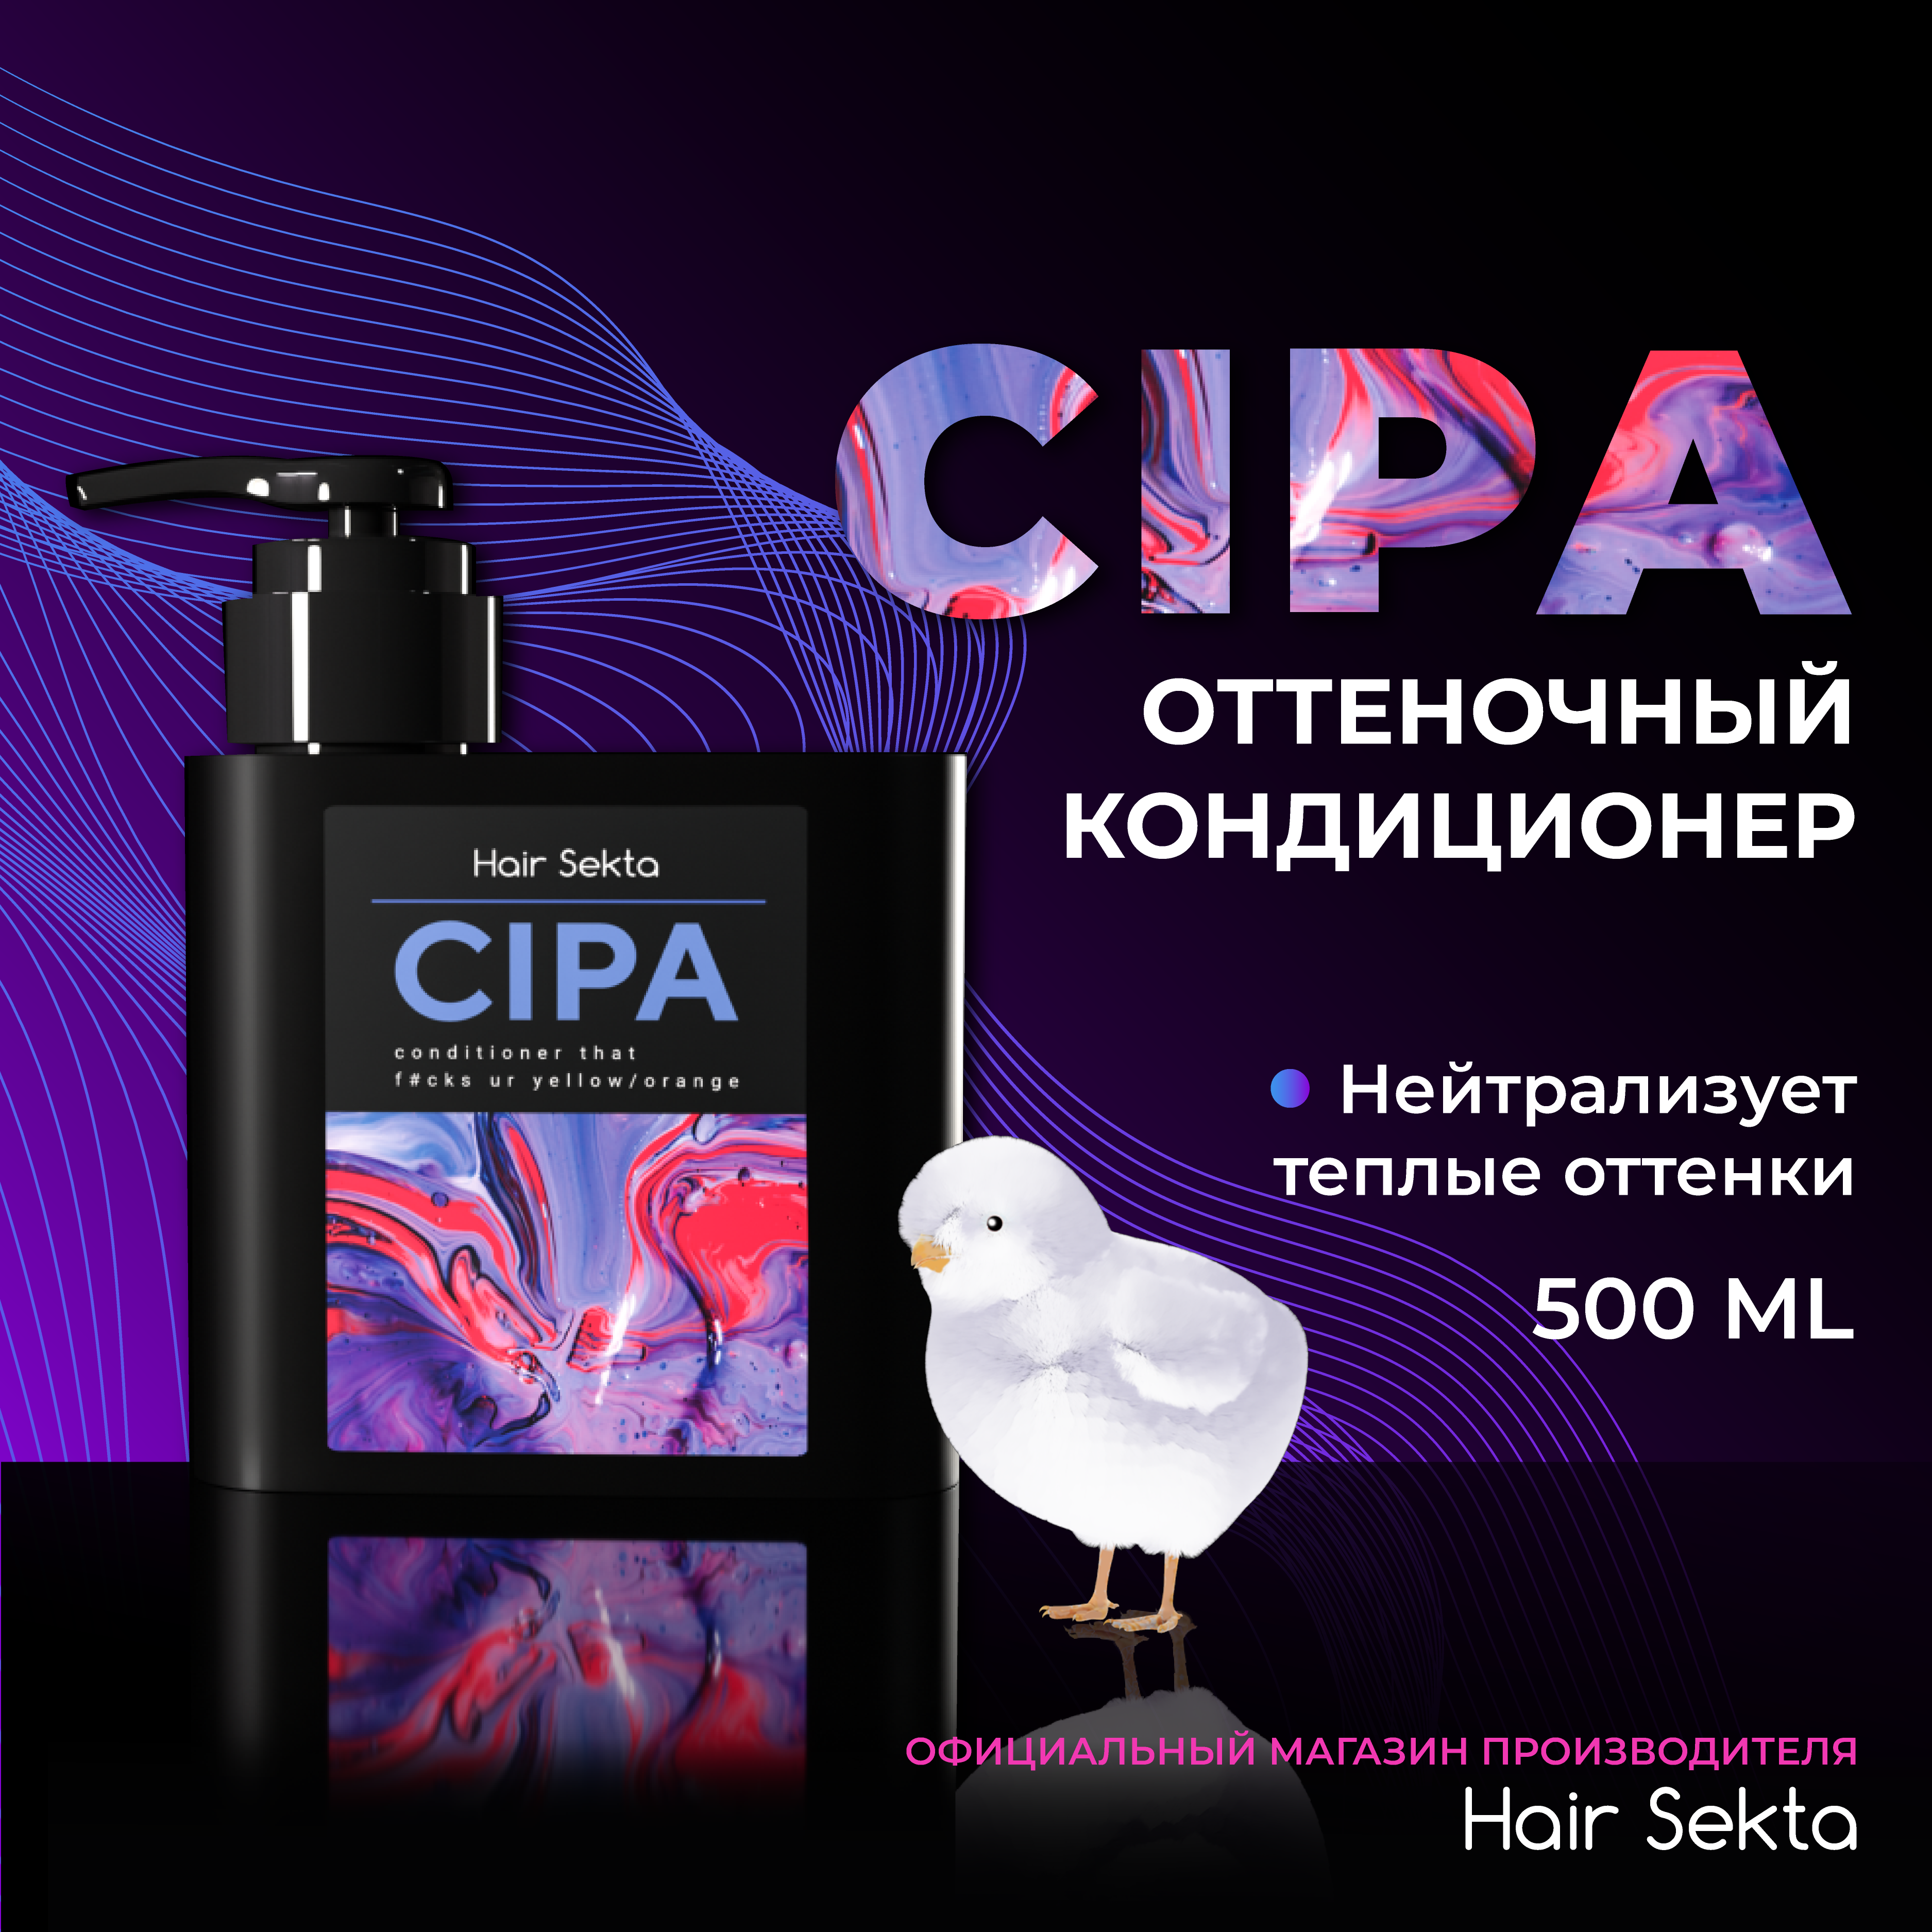 Кондиционер для волос Hair Sekta Cipa оттеночный, 500 мл нилпа протоцид кондиционер для аквариума против грибков и эктопаразитов 50 мл